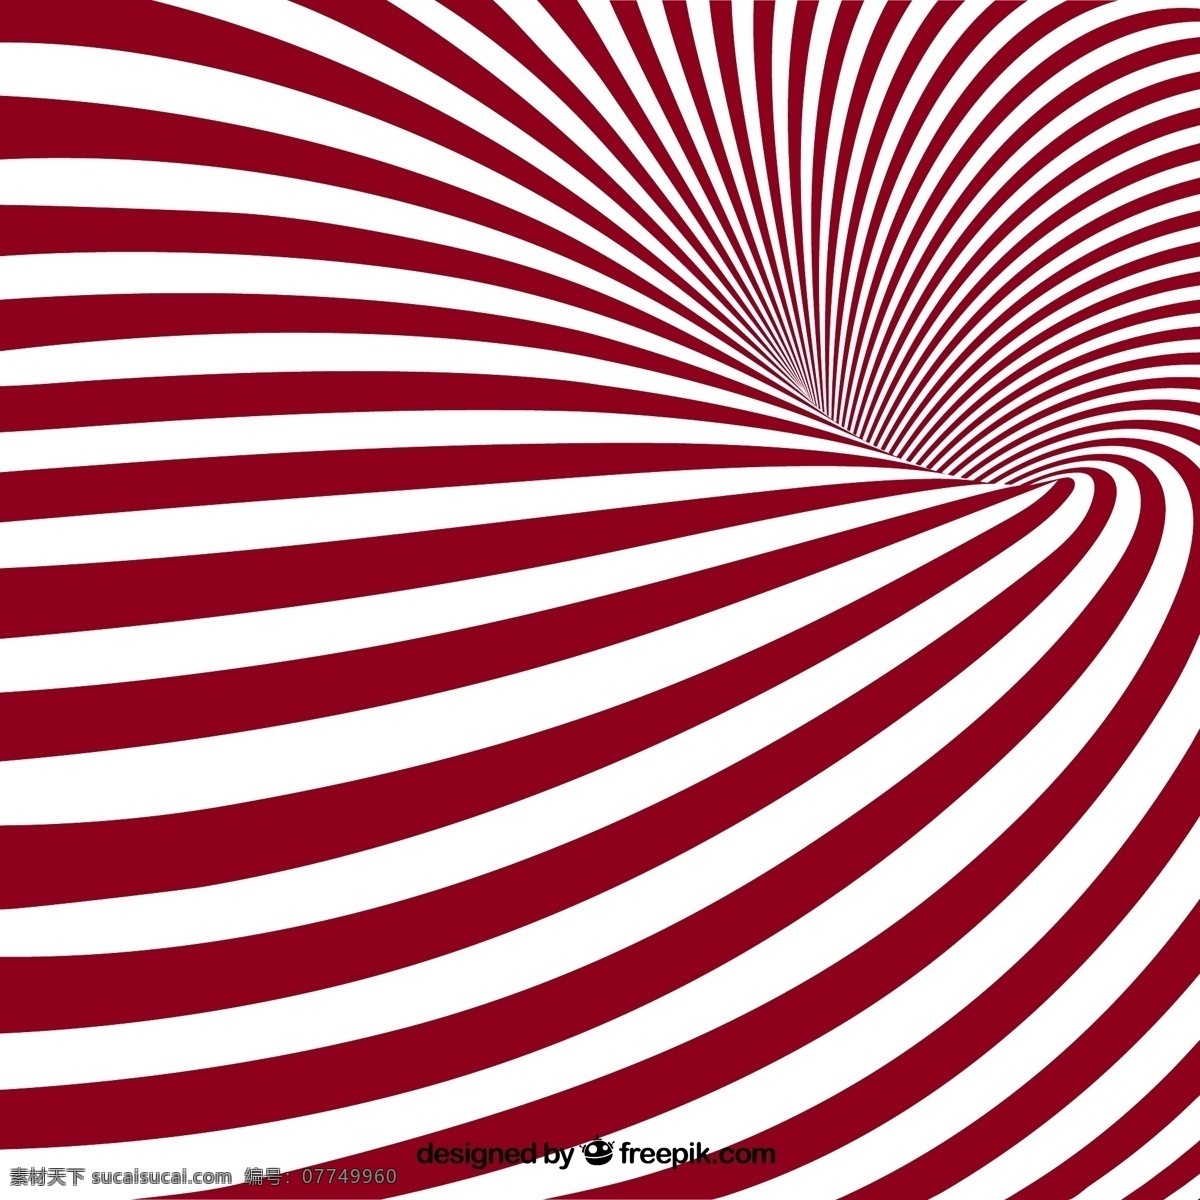 红 白 条纹 漩涡 背景图片 背景 矢量图 格式 矢量 高清图片